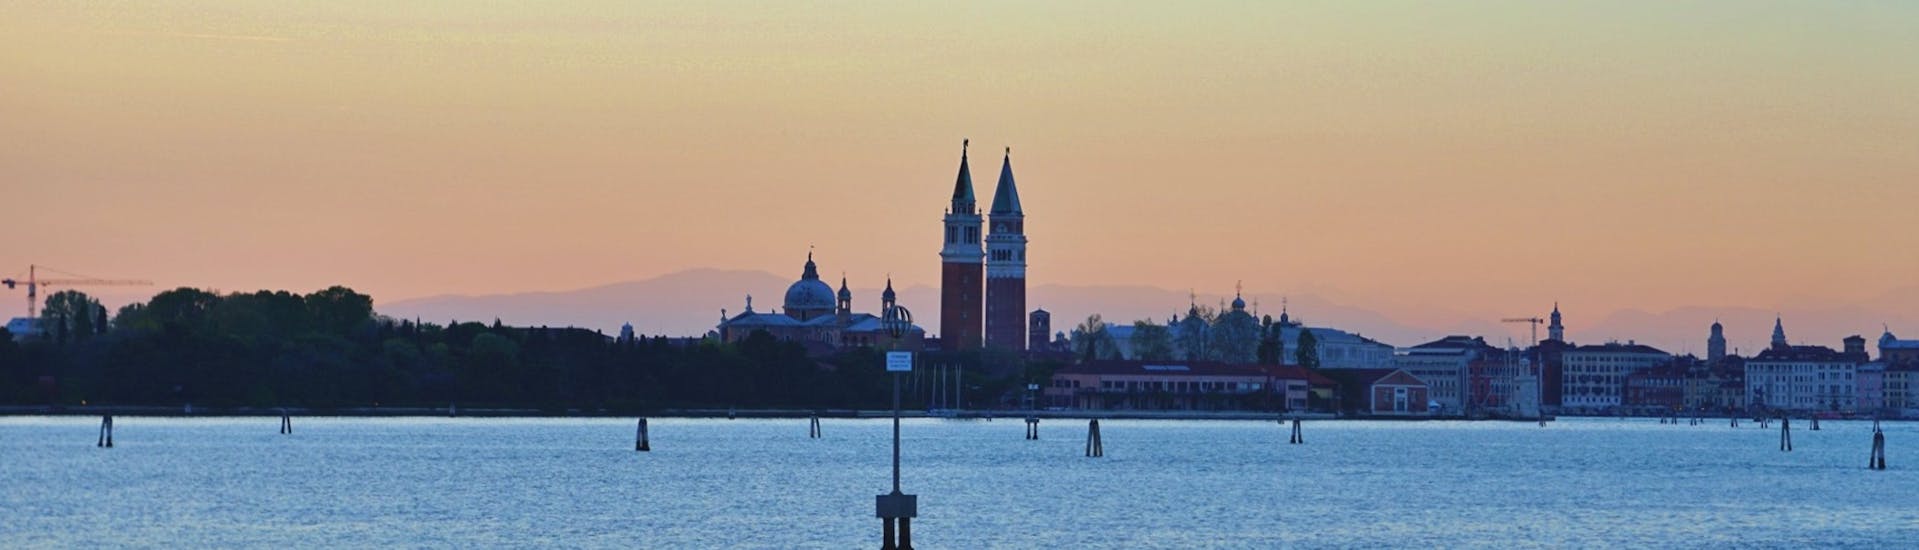 Vista de Venecia al atardecer desde el barco, durante el paseo con Il Doge di Venezia.